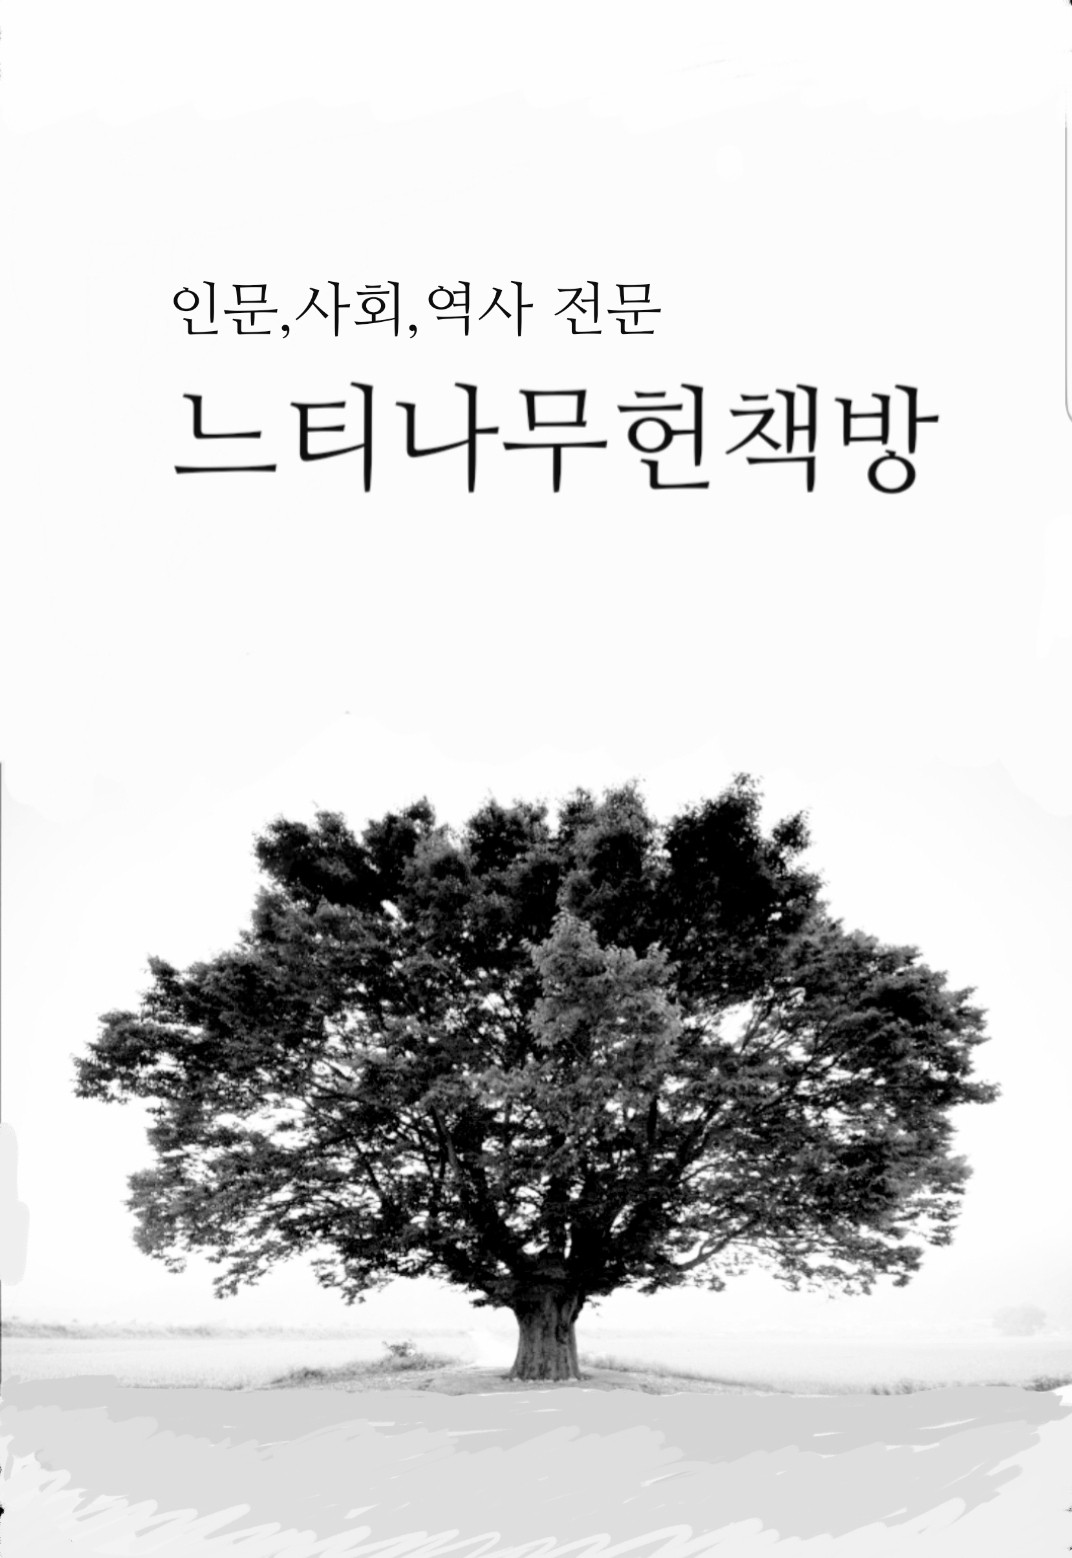 서부 경남의 선사와 고대 - 경상대학교 개교50주년 기념특별전 (알특3코너)